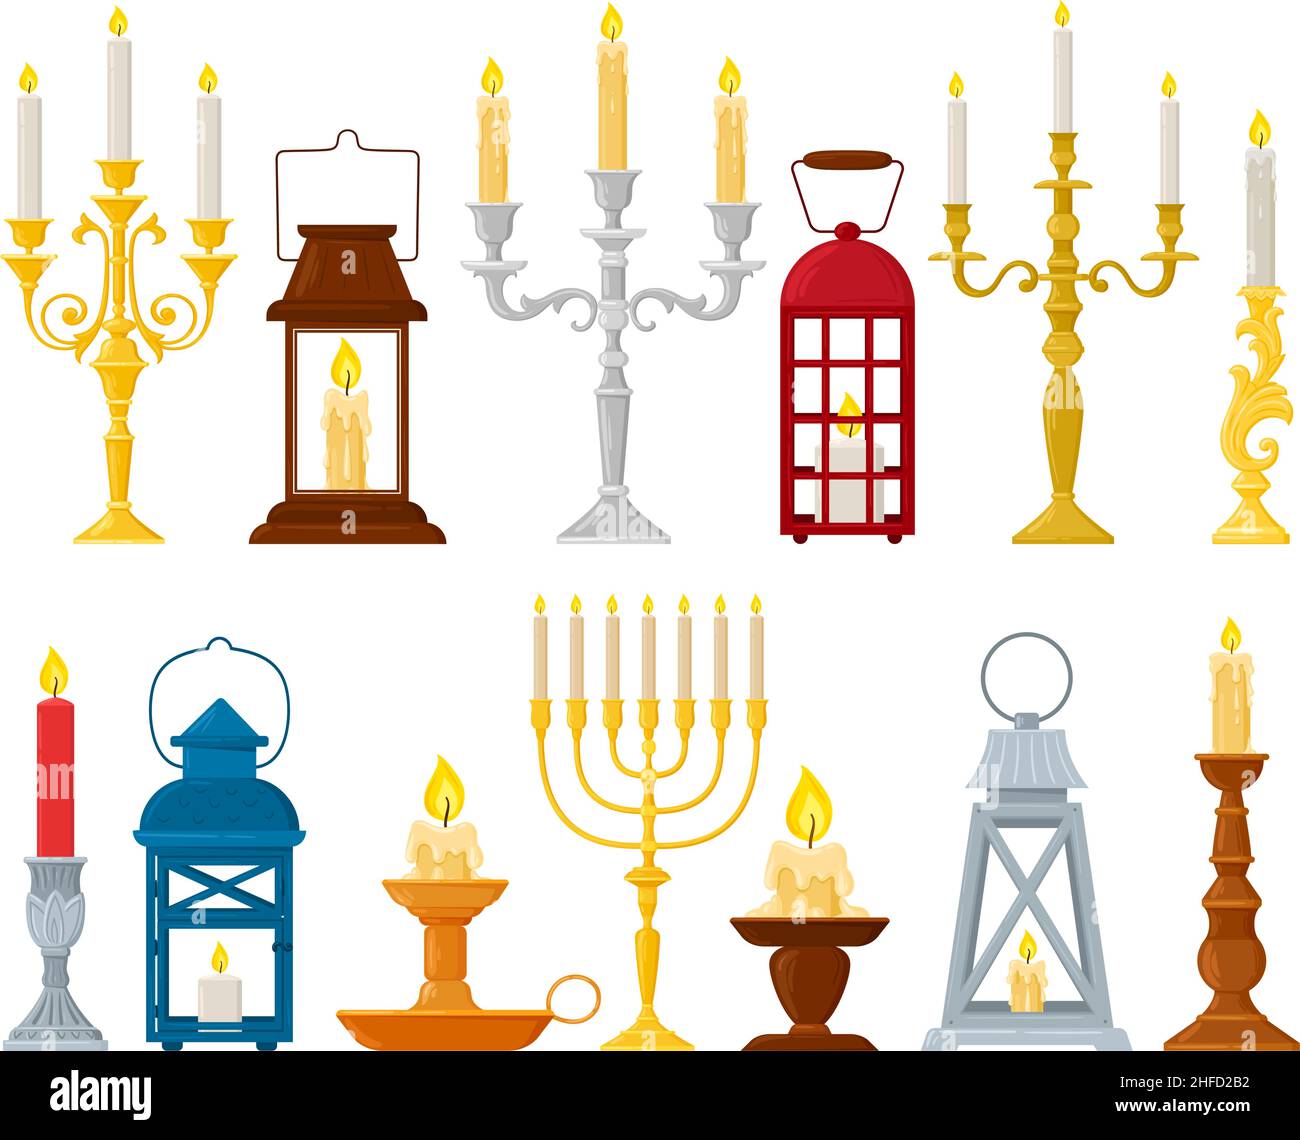 Chandeliers, lampes, chandeliers et chandeliers d'époque.Chandeliers rétro, lanternes décoratives médiévales à la main, ensemble d'illustrations vectorielles Illustration de Vecteur